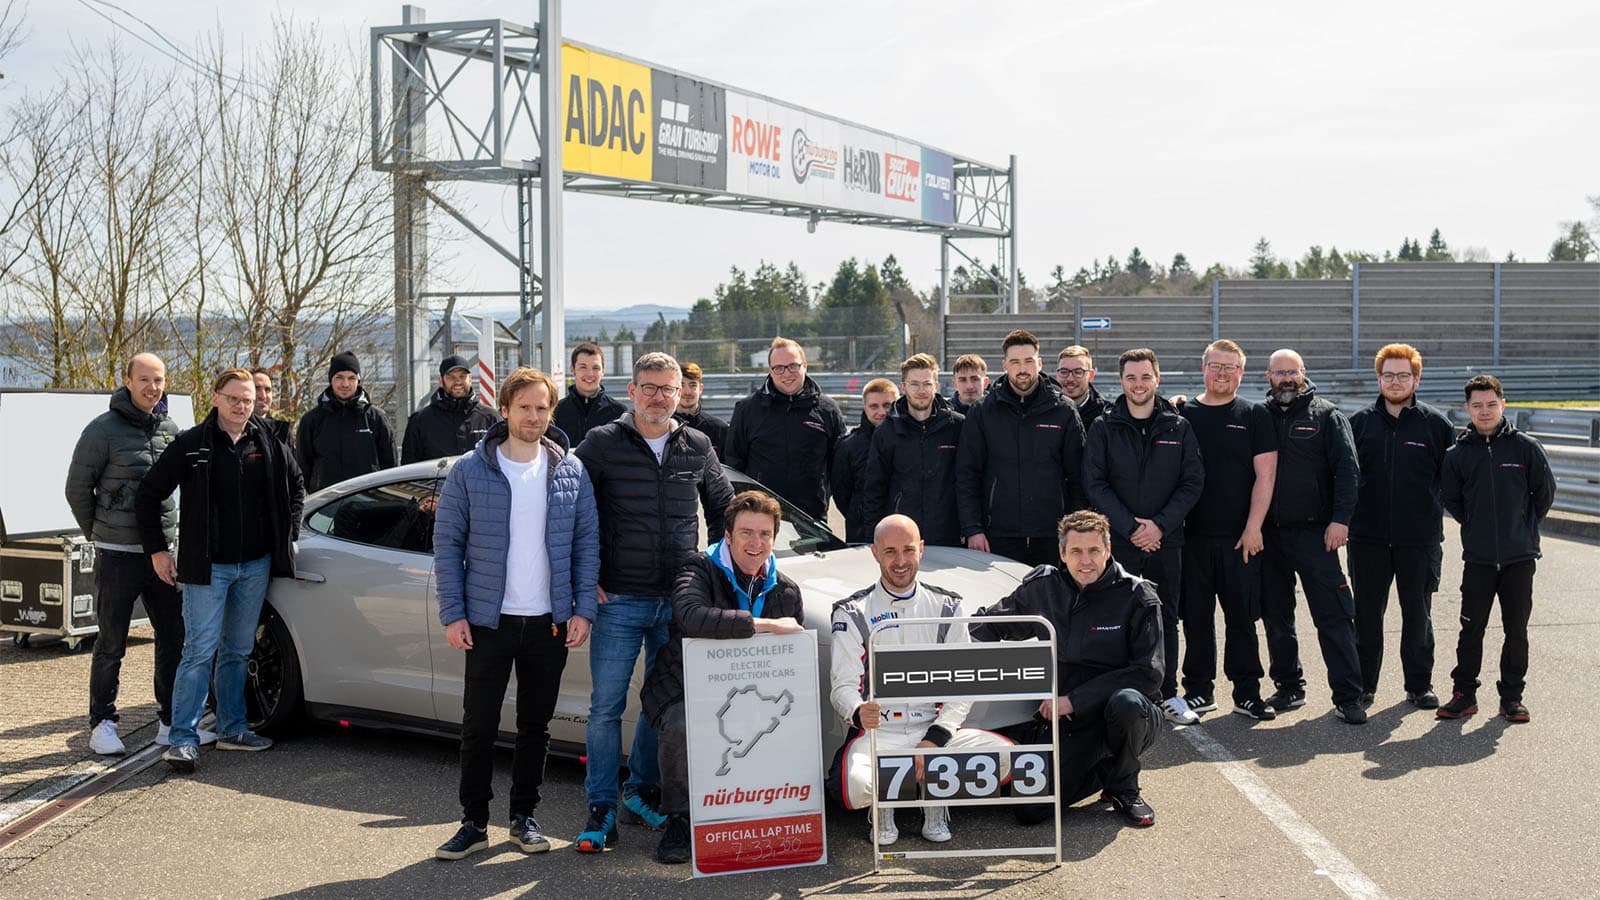 Kỷ lục mới của Porsche Taycan trên đường đua Nürburgring